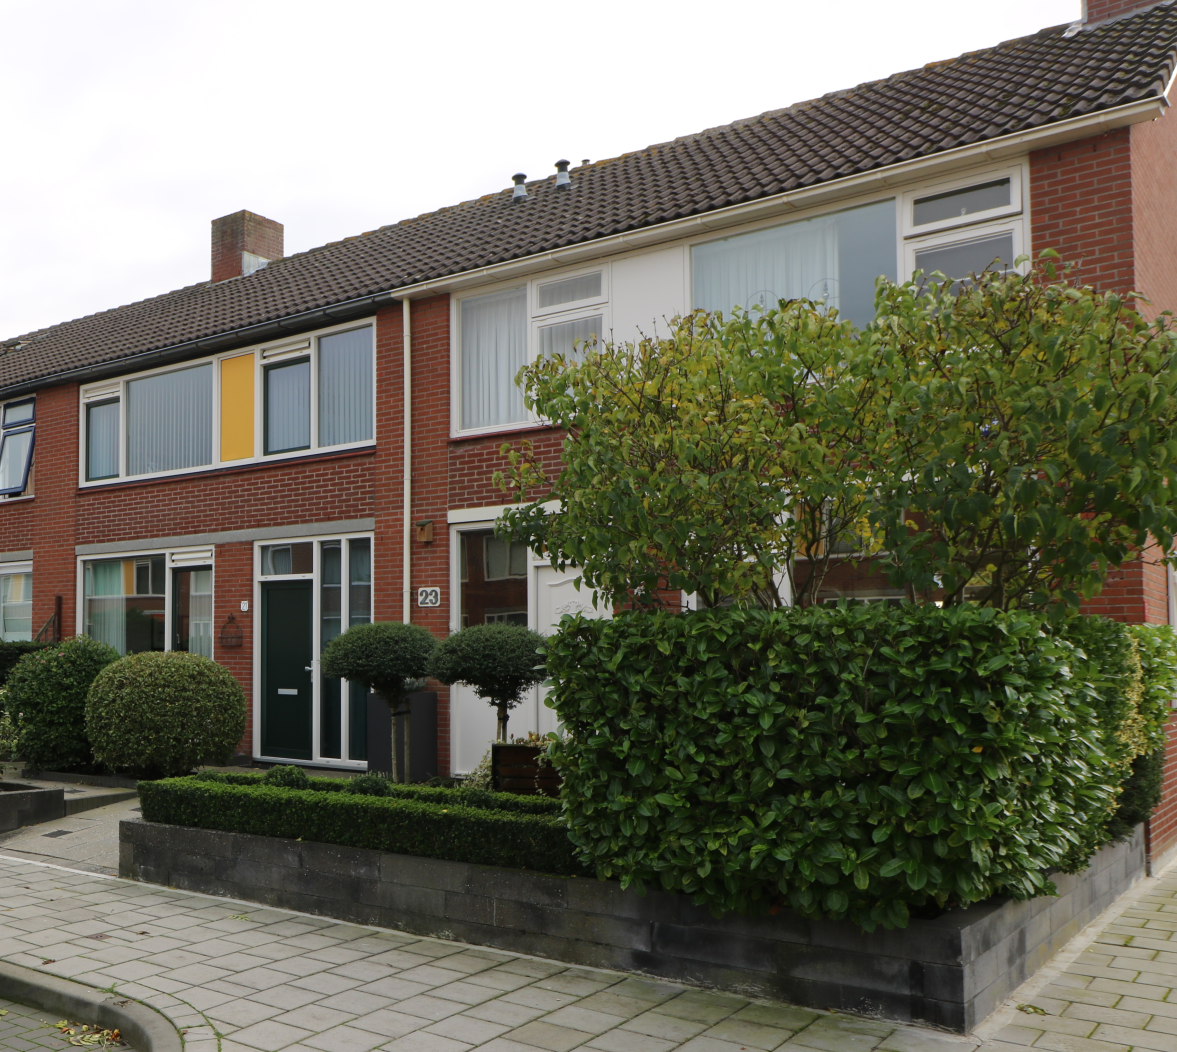 Grevelingenstraat 21, 4388 SB Oost-Souburg, Nederland